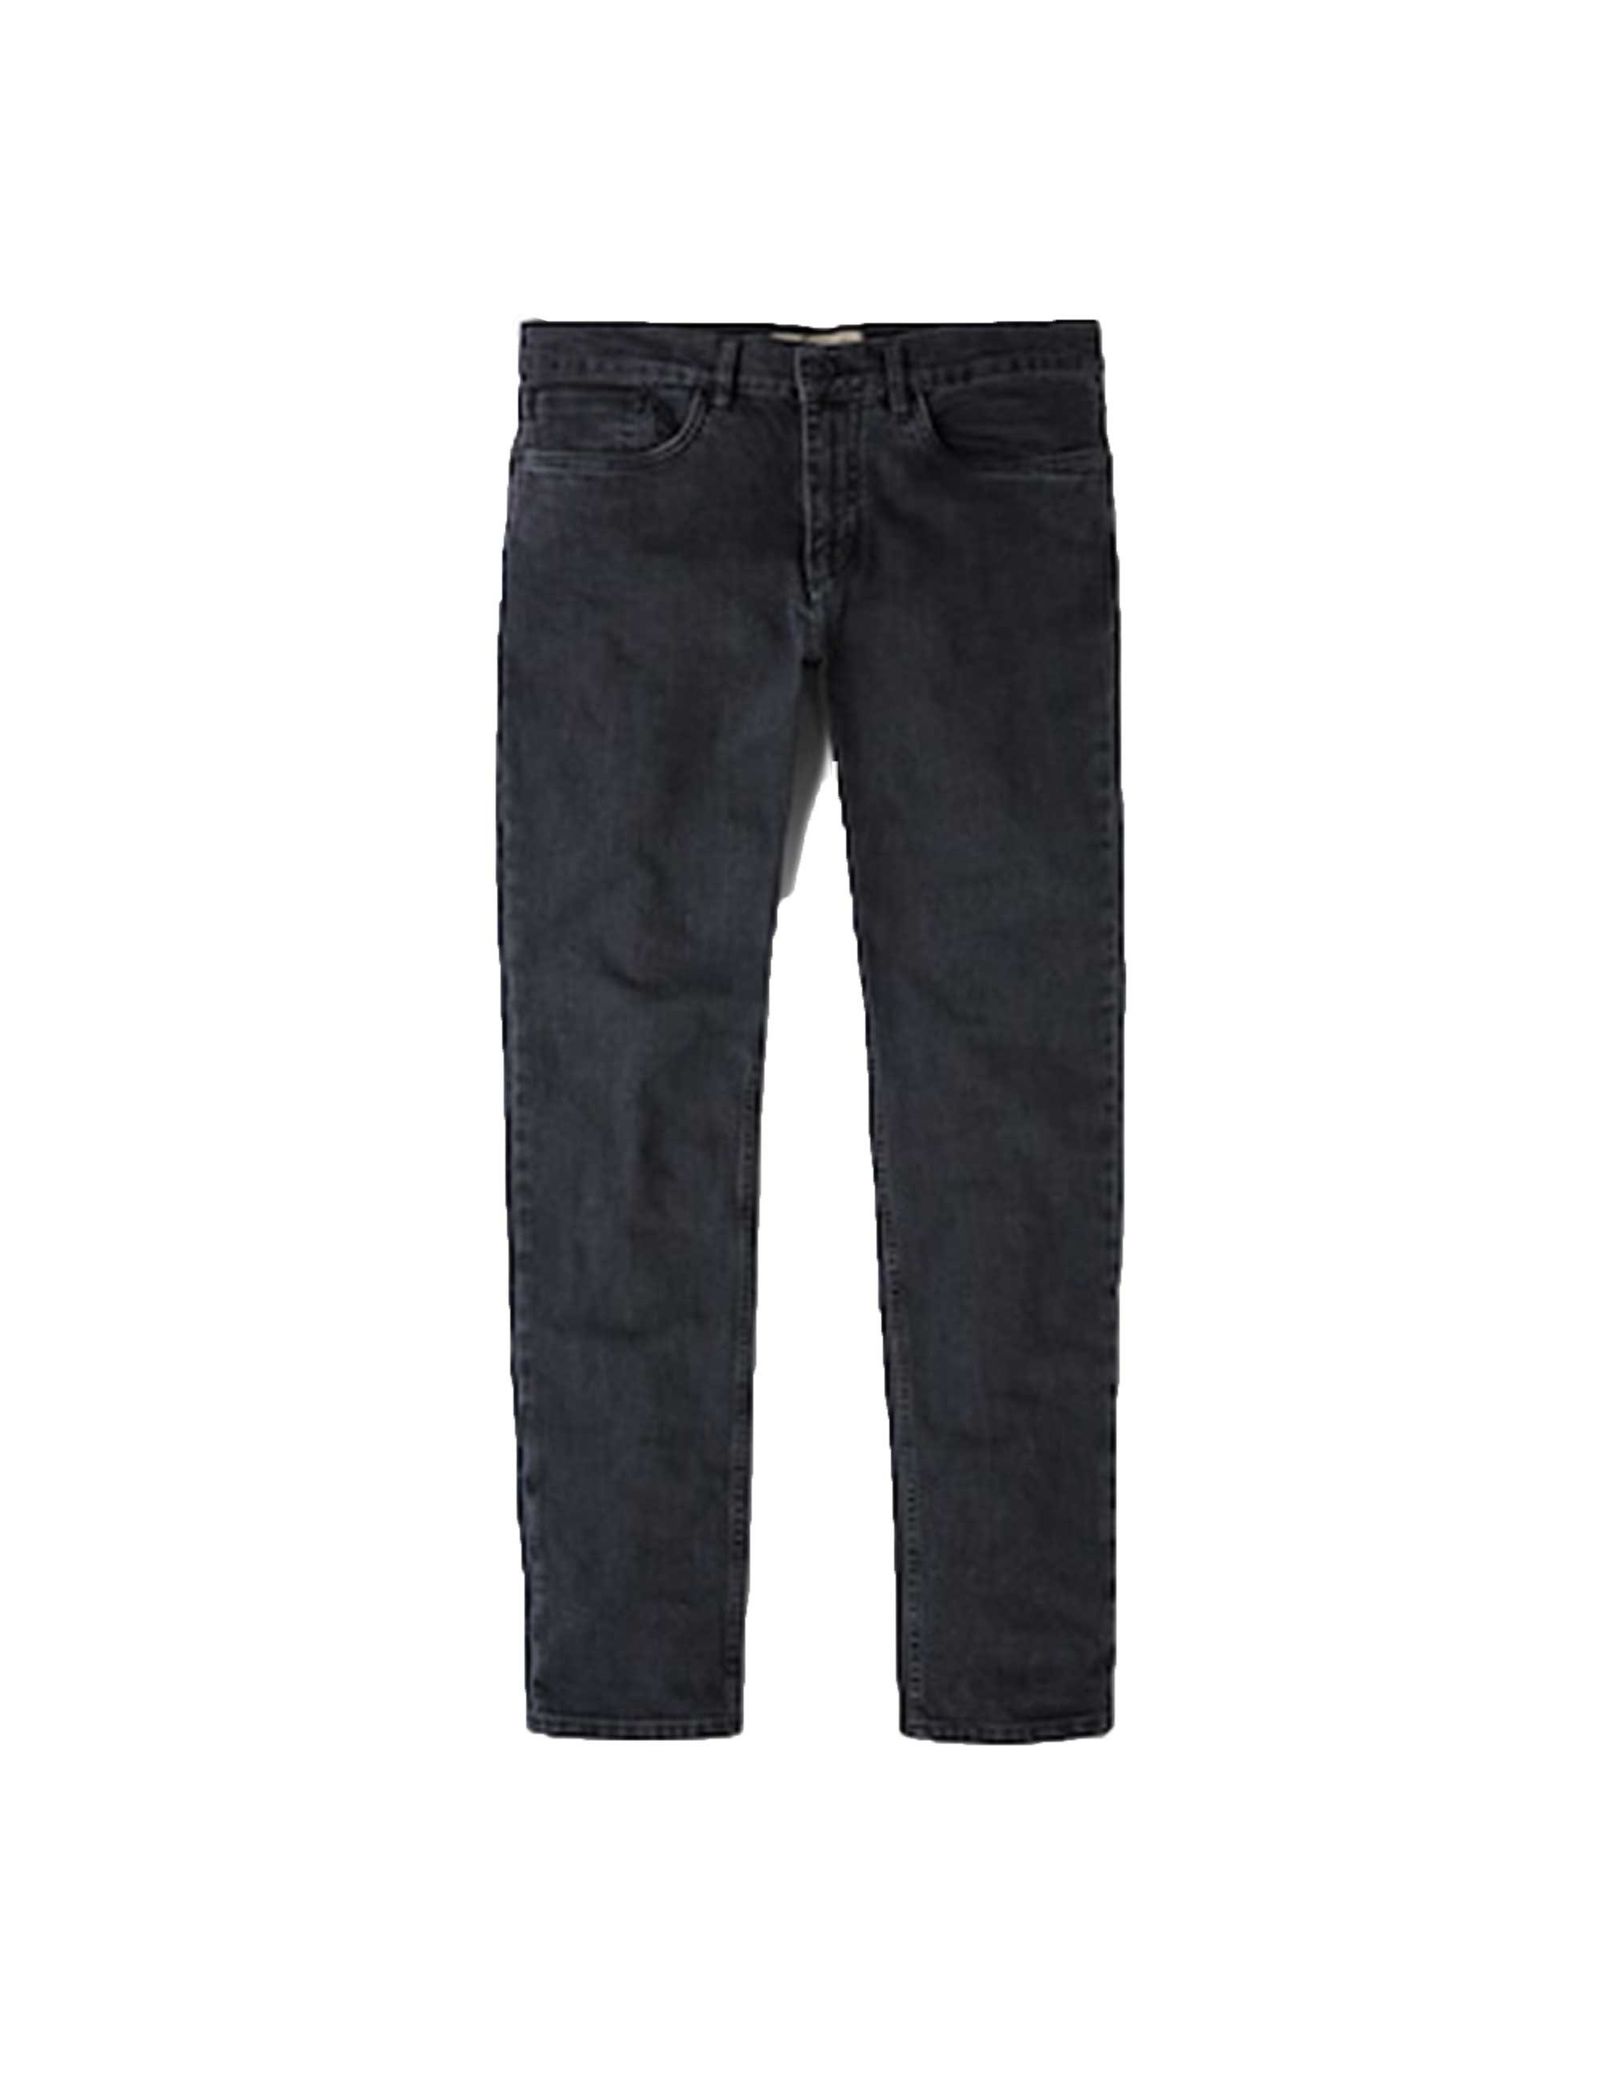 شلوار جین راسته مردانه - مانگو - زغالي  - 2